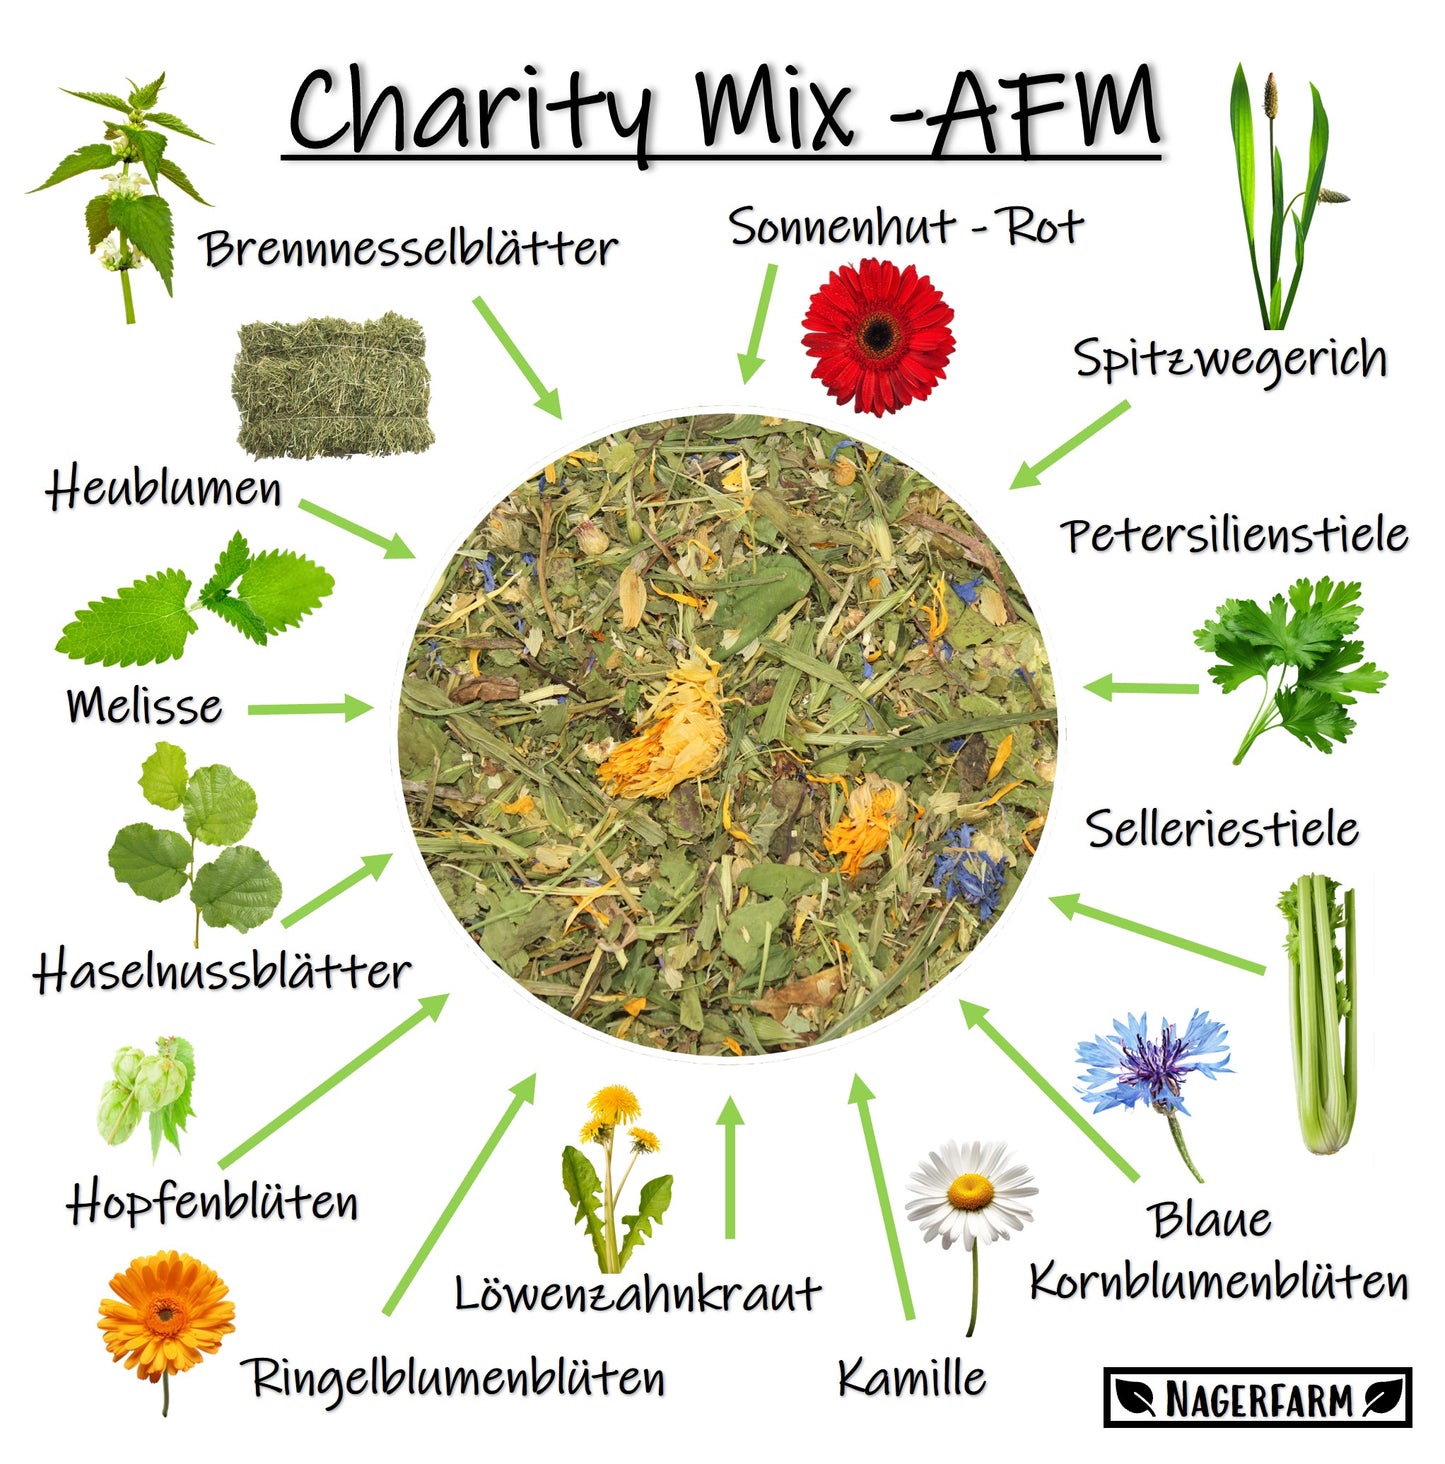 Charity Mix - AFM